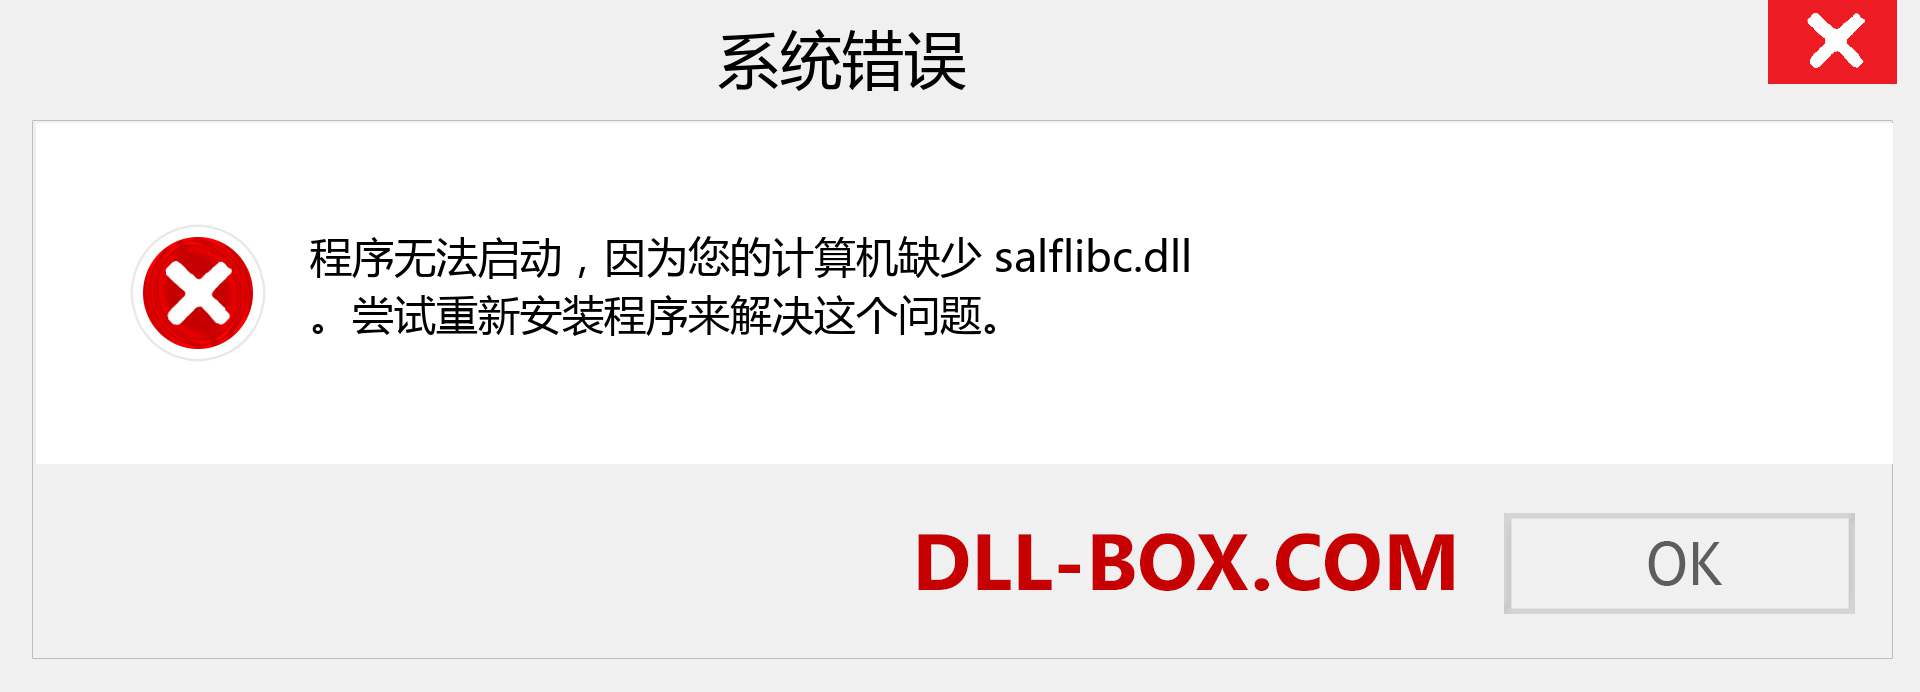 salflibc.dll 文件丢失？。 适用于 Windows 7、8、10 的下载 - 修复 Windows、照片、图像上的 salflibc dll 丢失错误